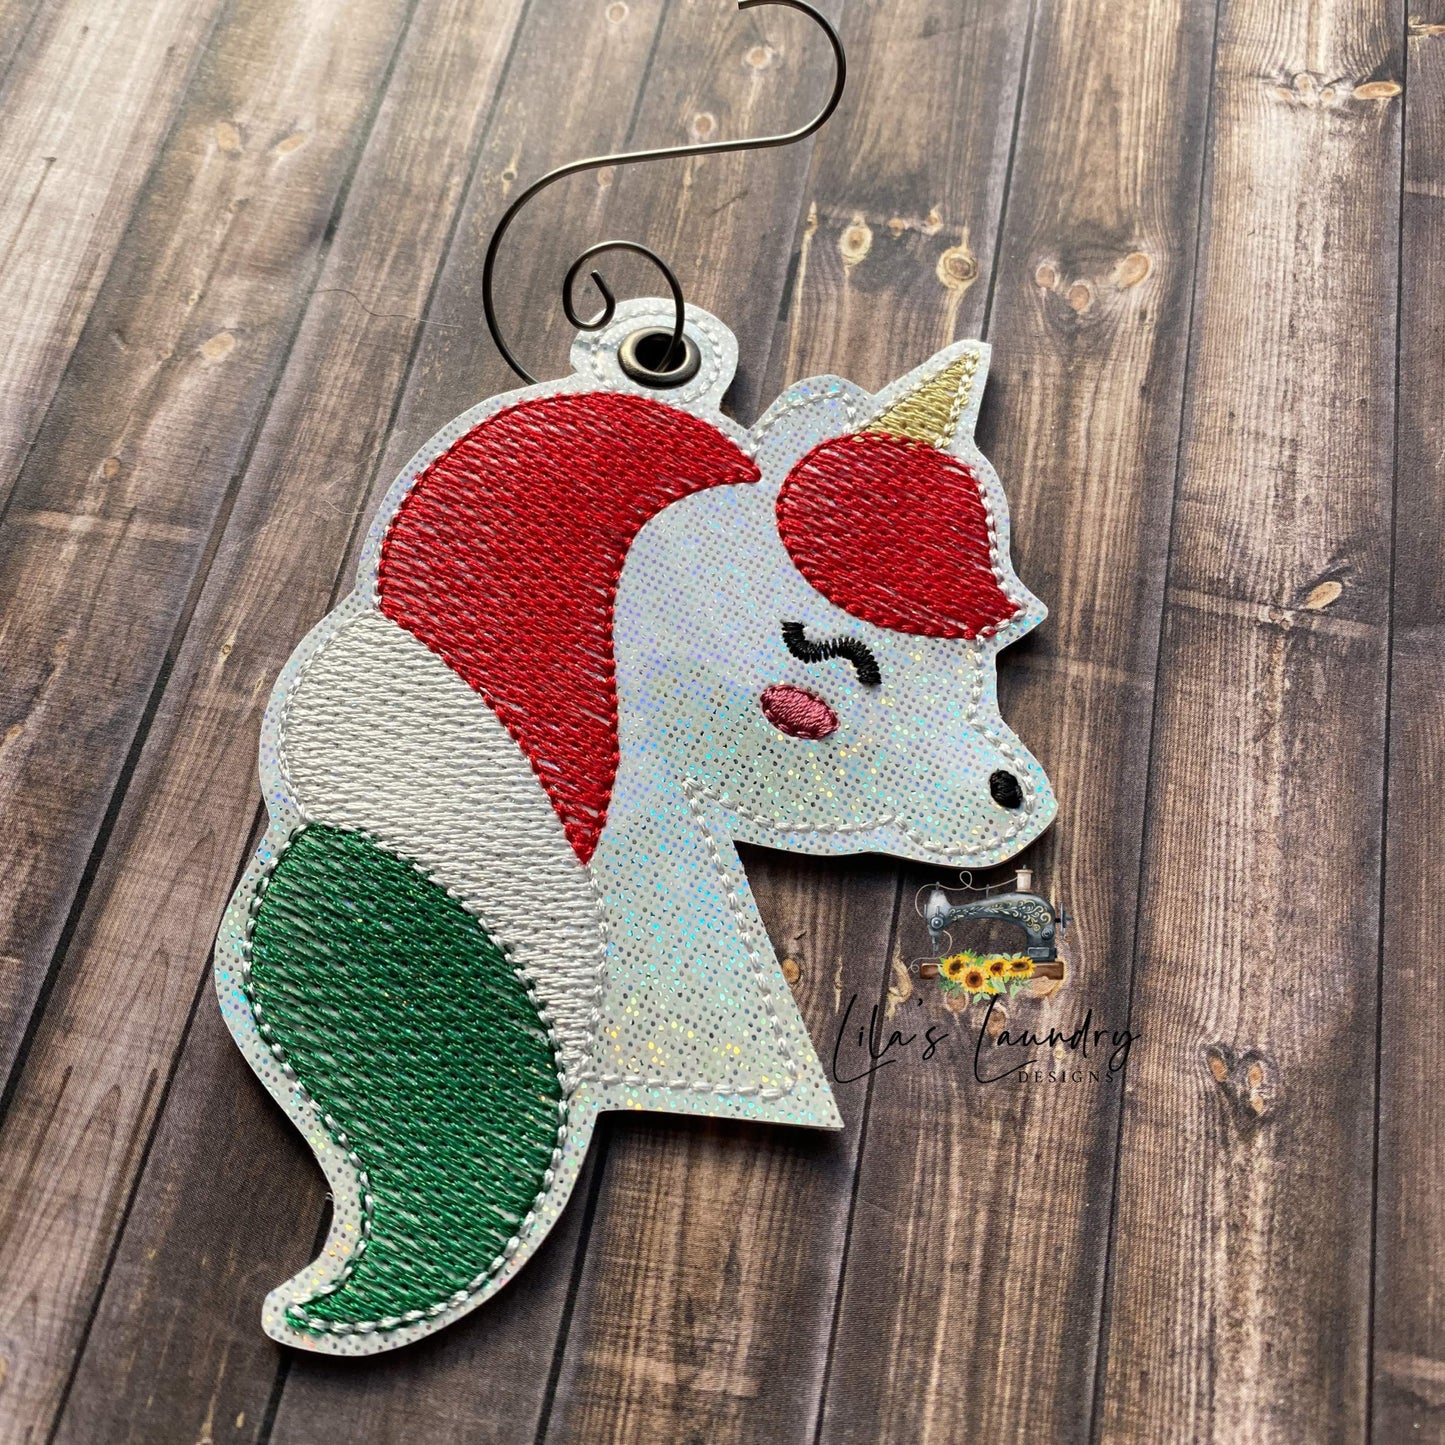 Unicorn Sketch Ornament - Digital Embroidery Design